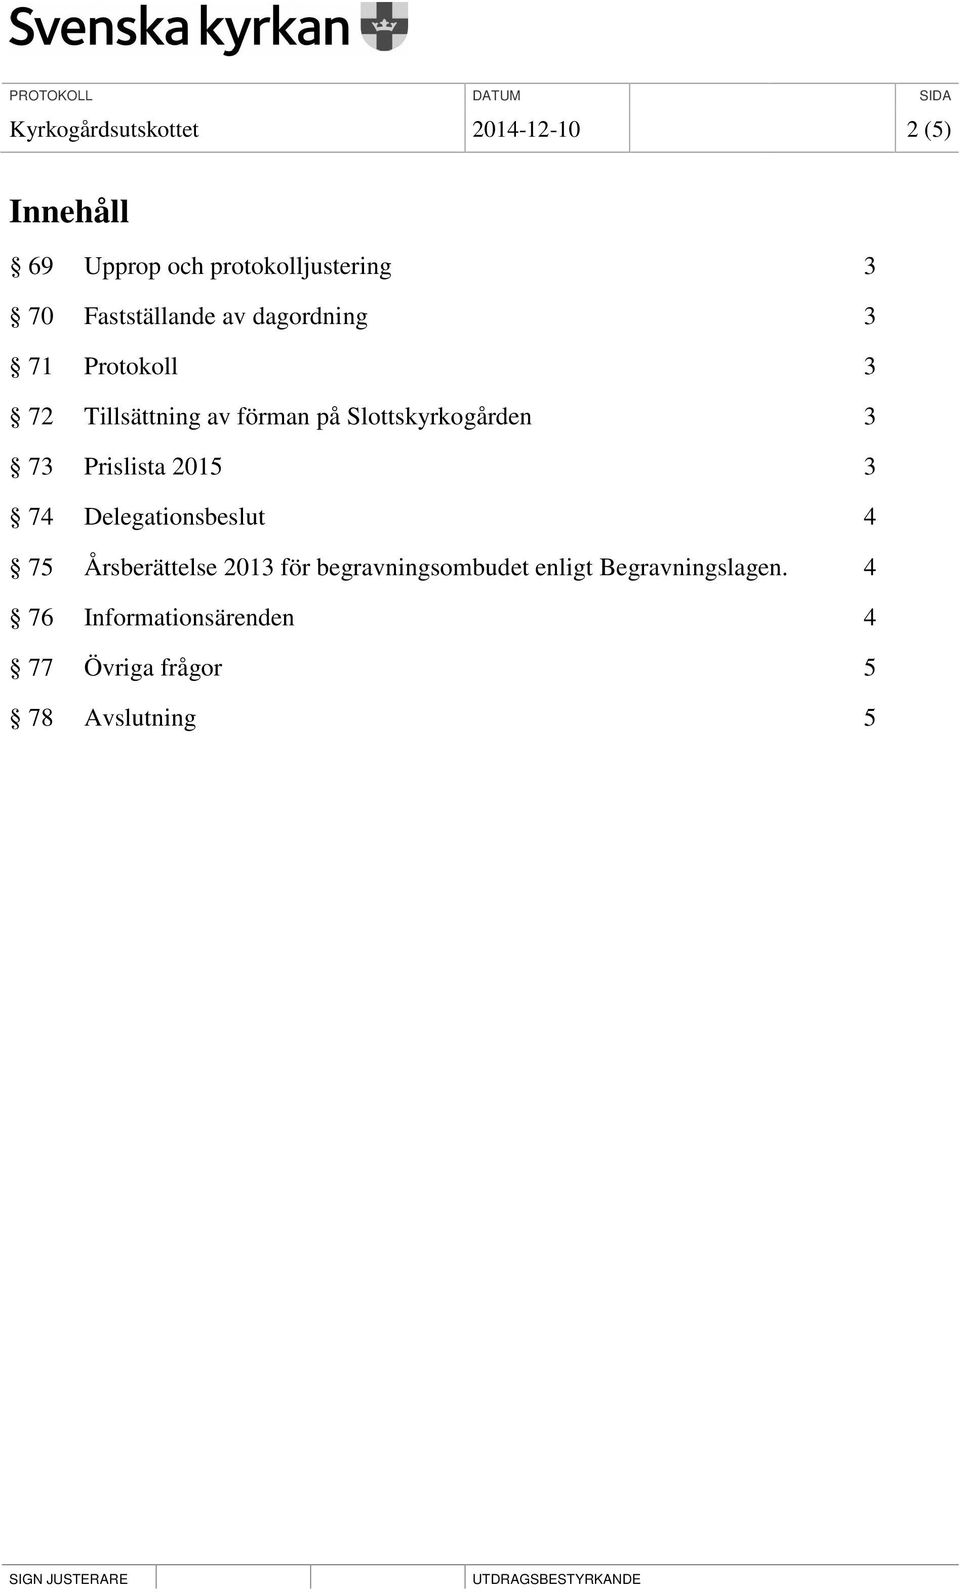 Slottskyrkogården 3 73 Prislista 2015 3 74 Delegationsbeslut 4 75 Årsberättelse 2013